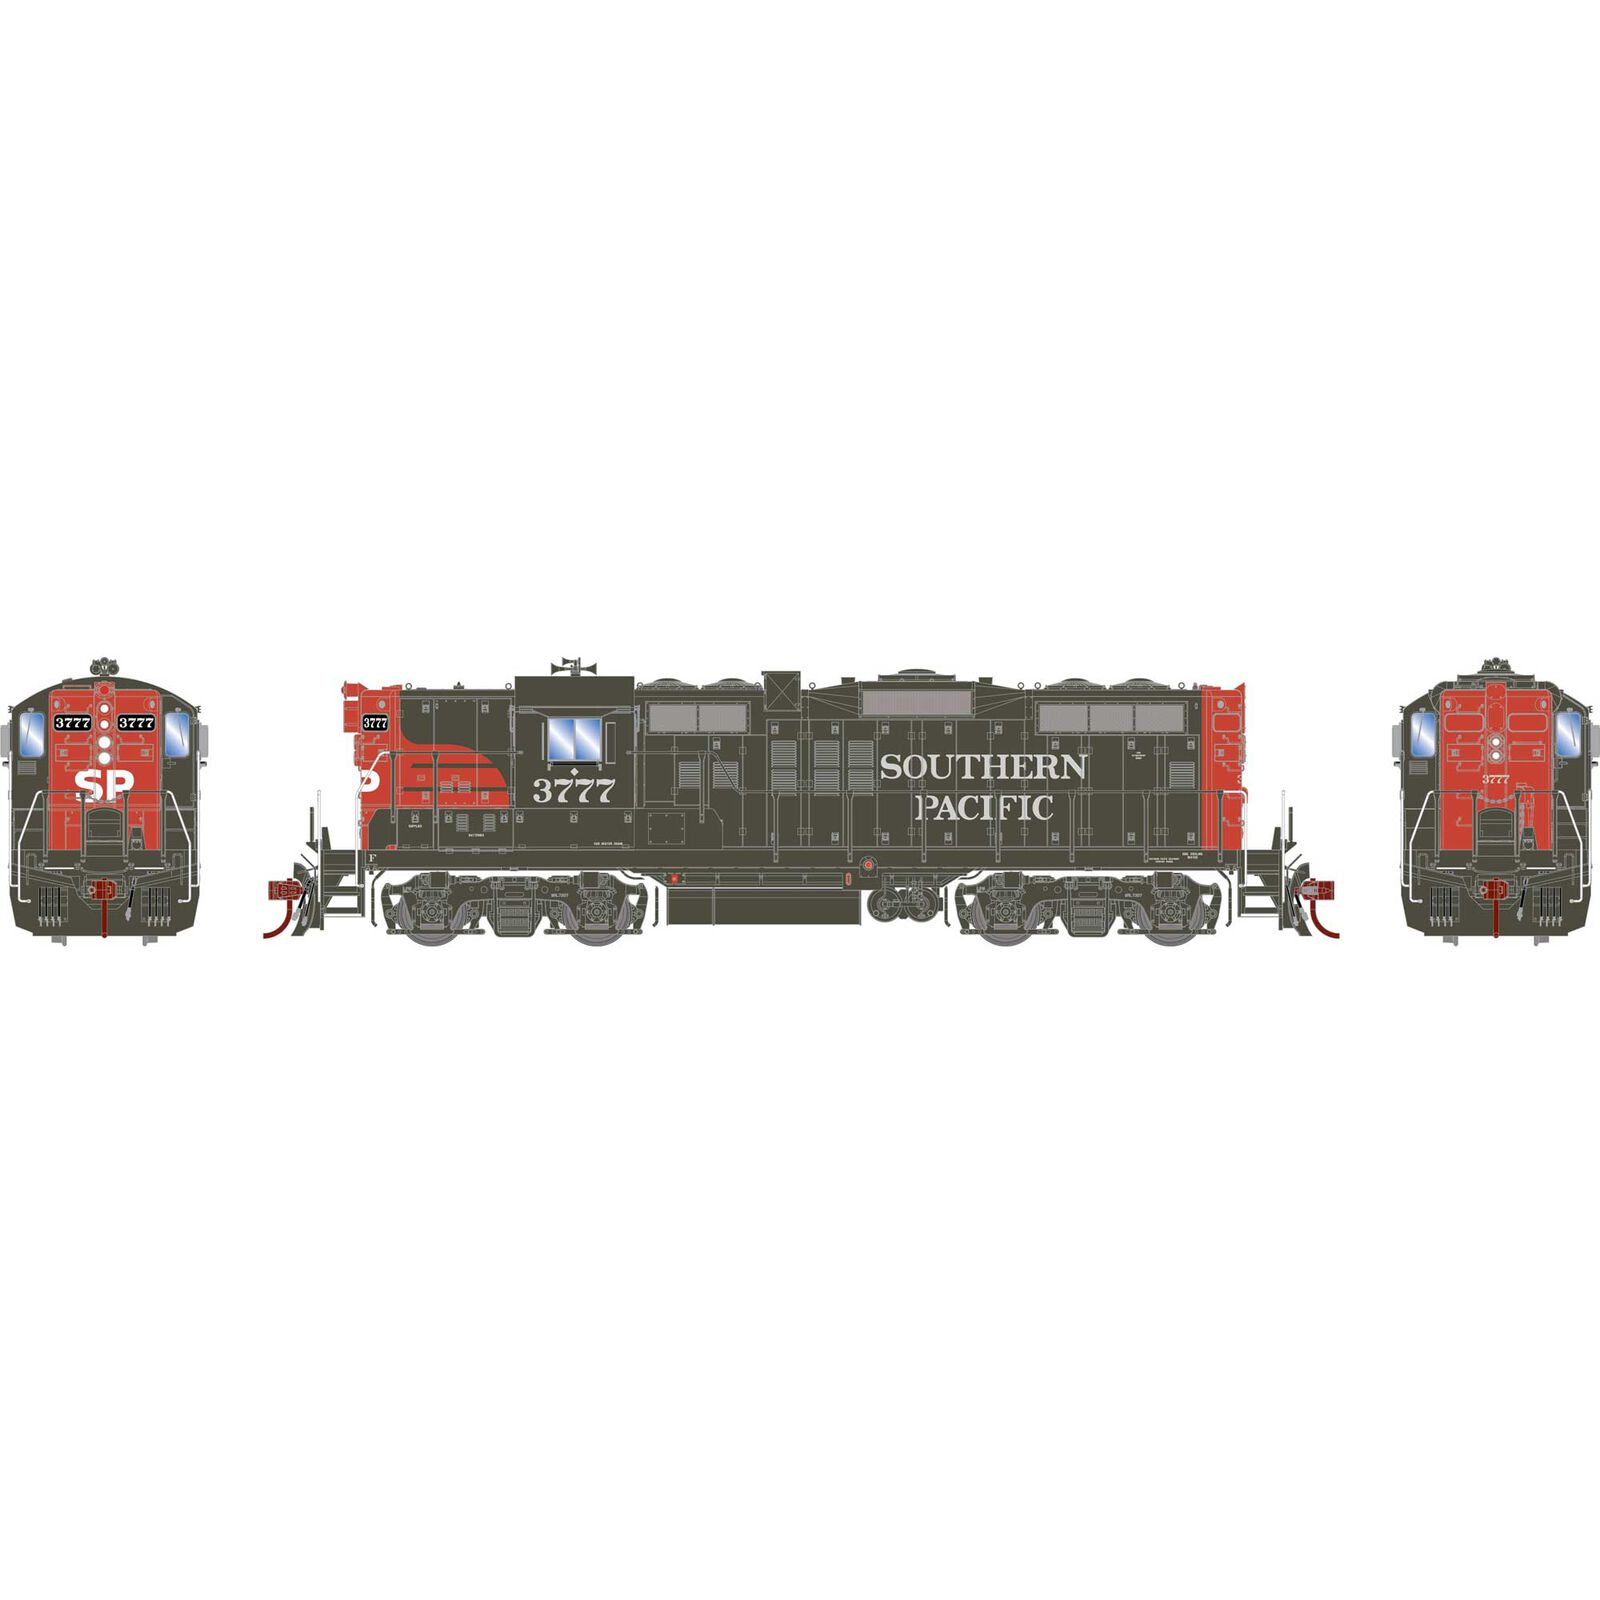 HO GP9E Locomotive with DCC & Sound, SP #3777